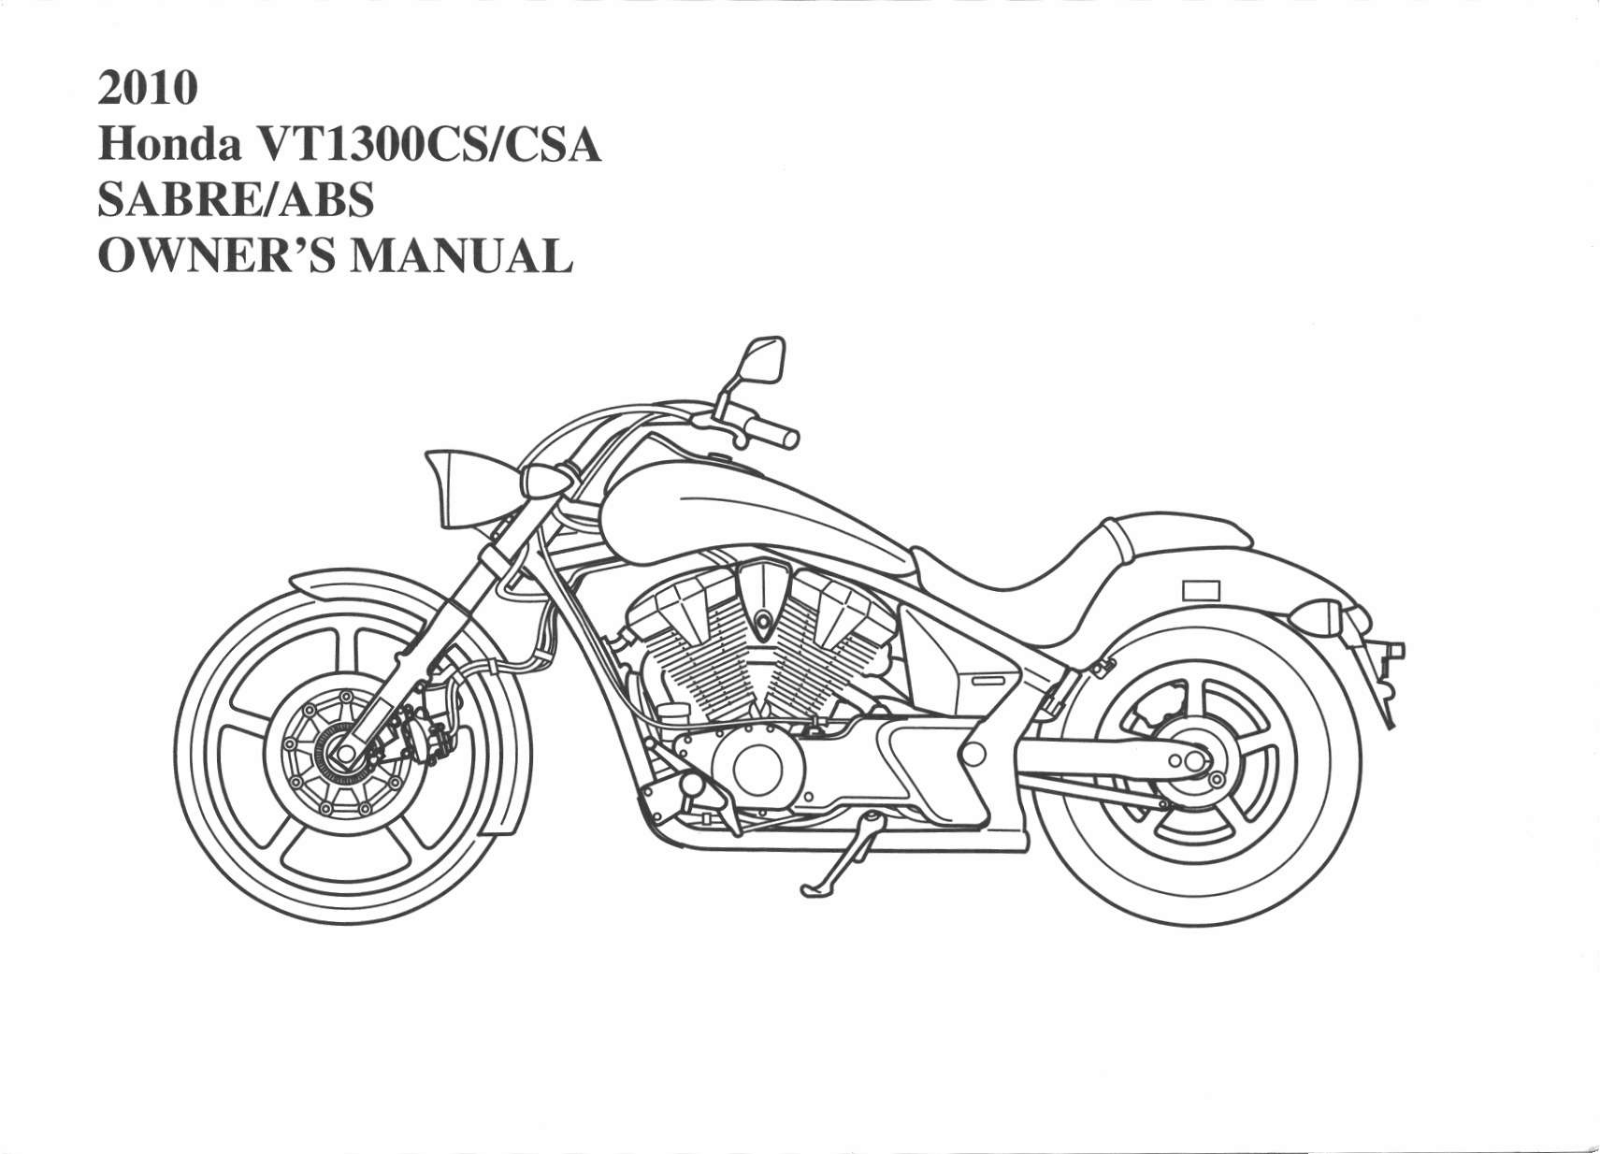 Honda VT1300CSA 2010 Owner's Manual